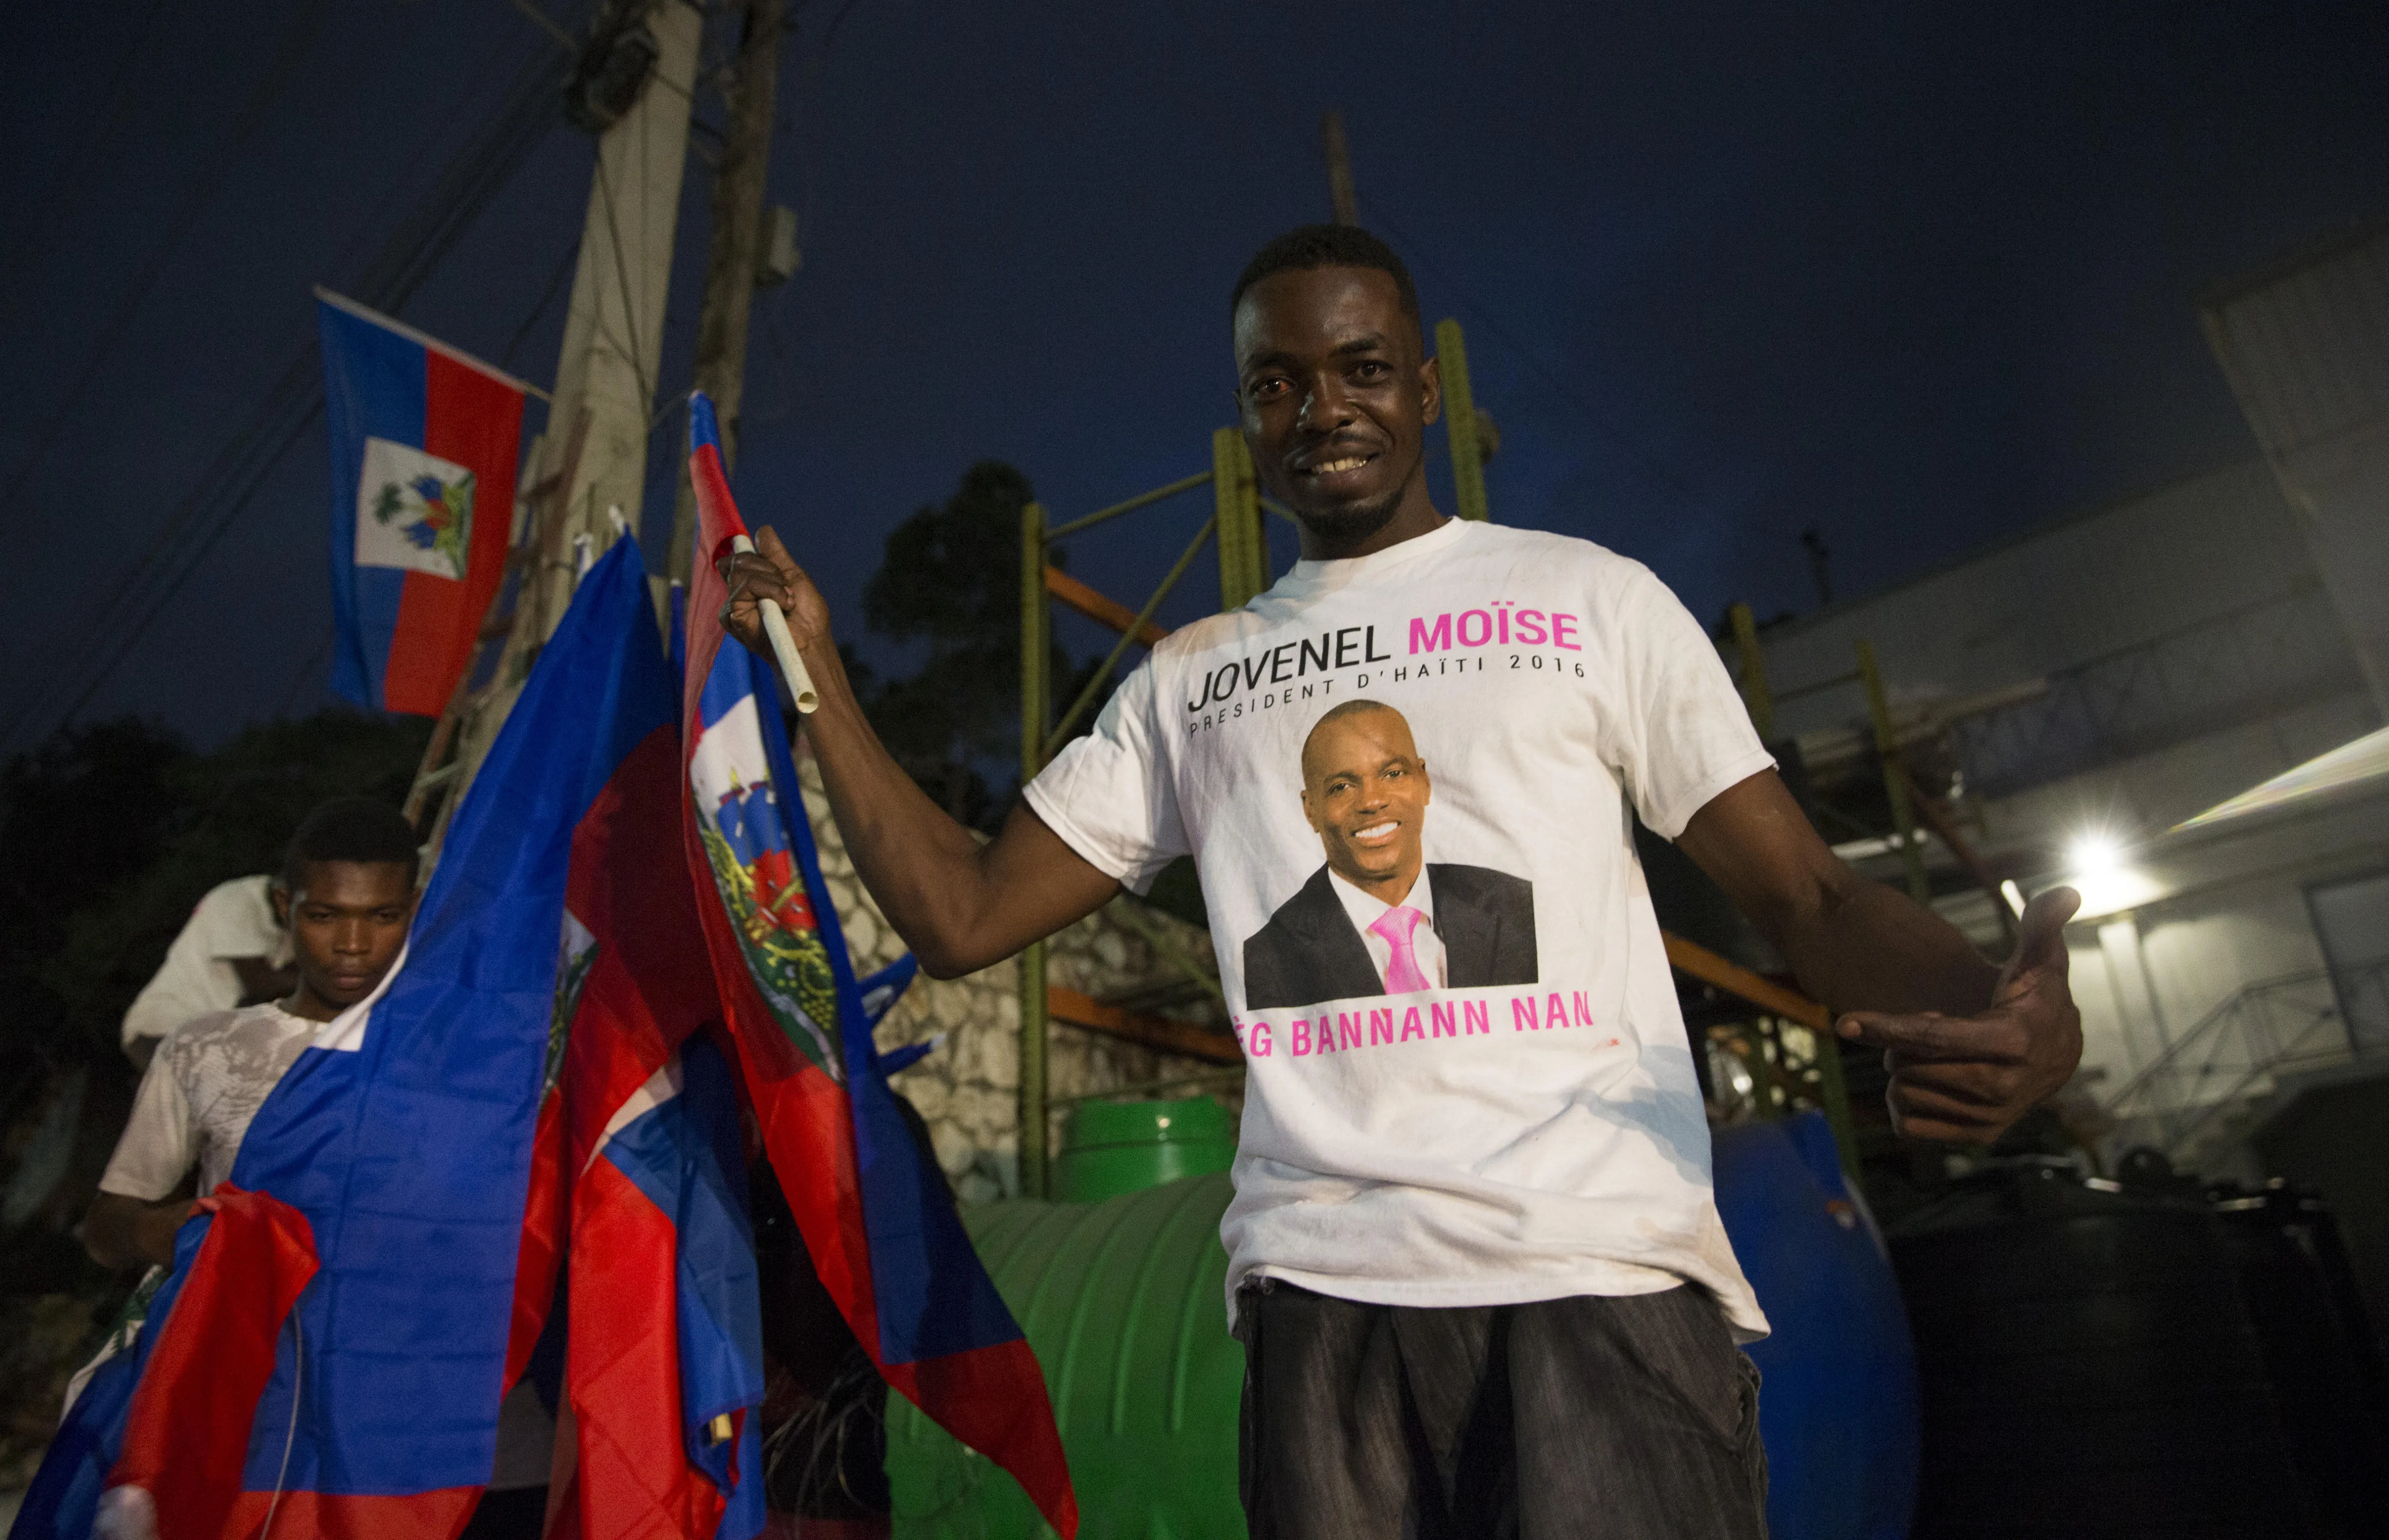 El magnicidio en Haití y la sucesión presidencial (Análisis)